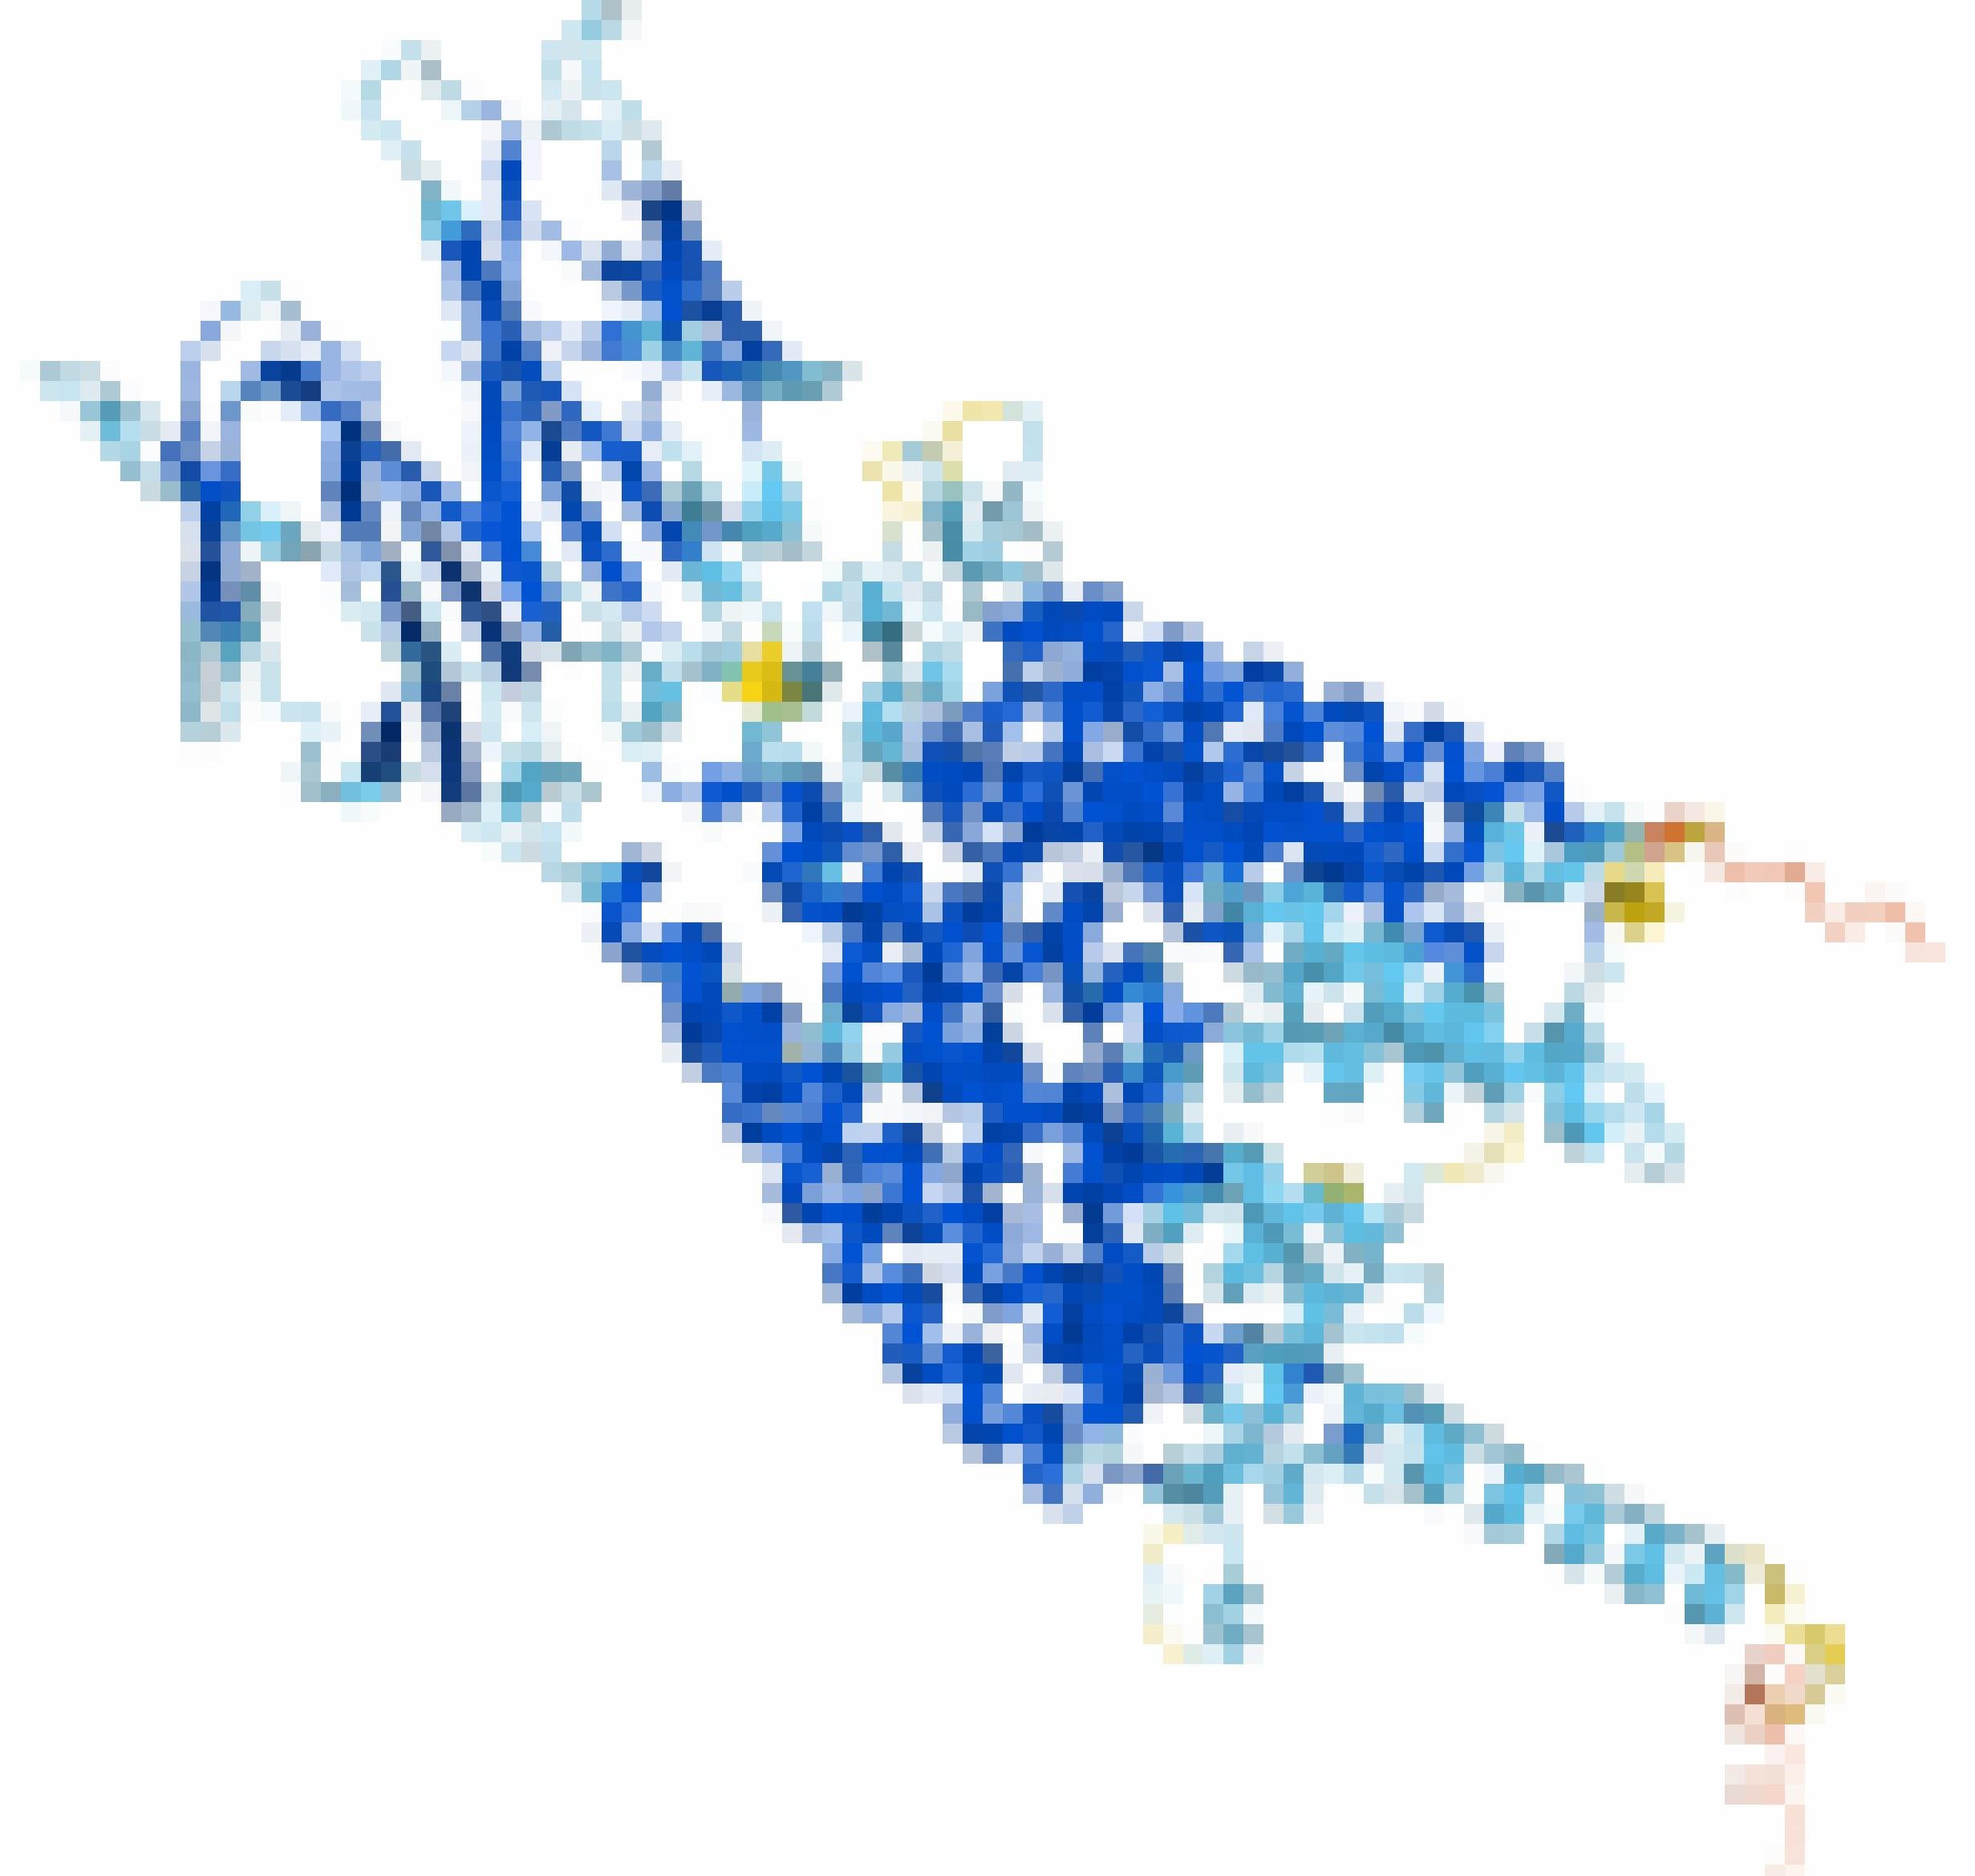 Dreidimensionale Struktur des Proteins PepT1, berechnet von der KI Alphafold der britischen Firma Deepmind.